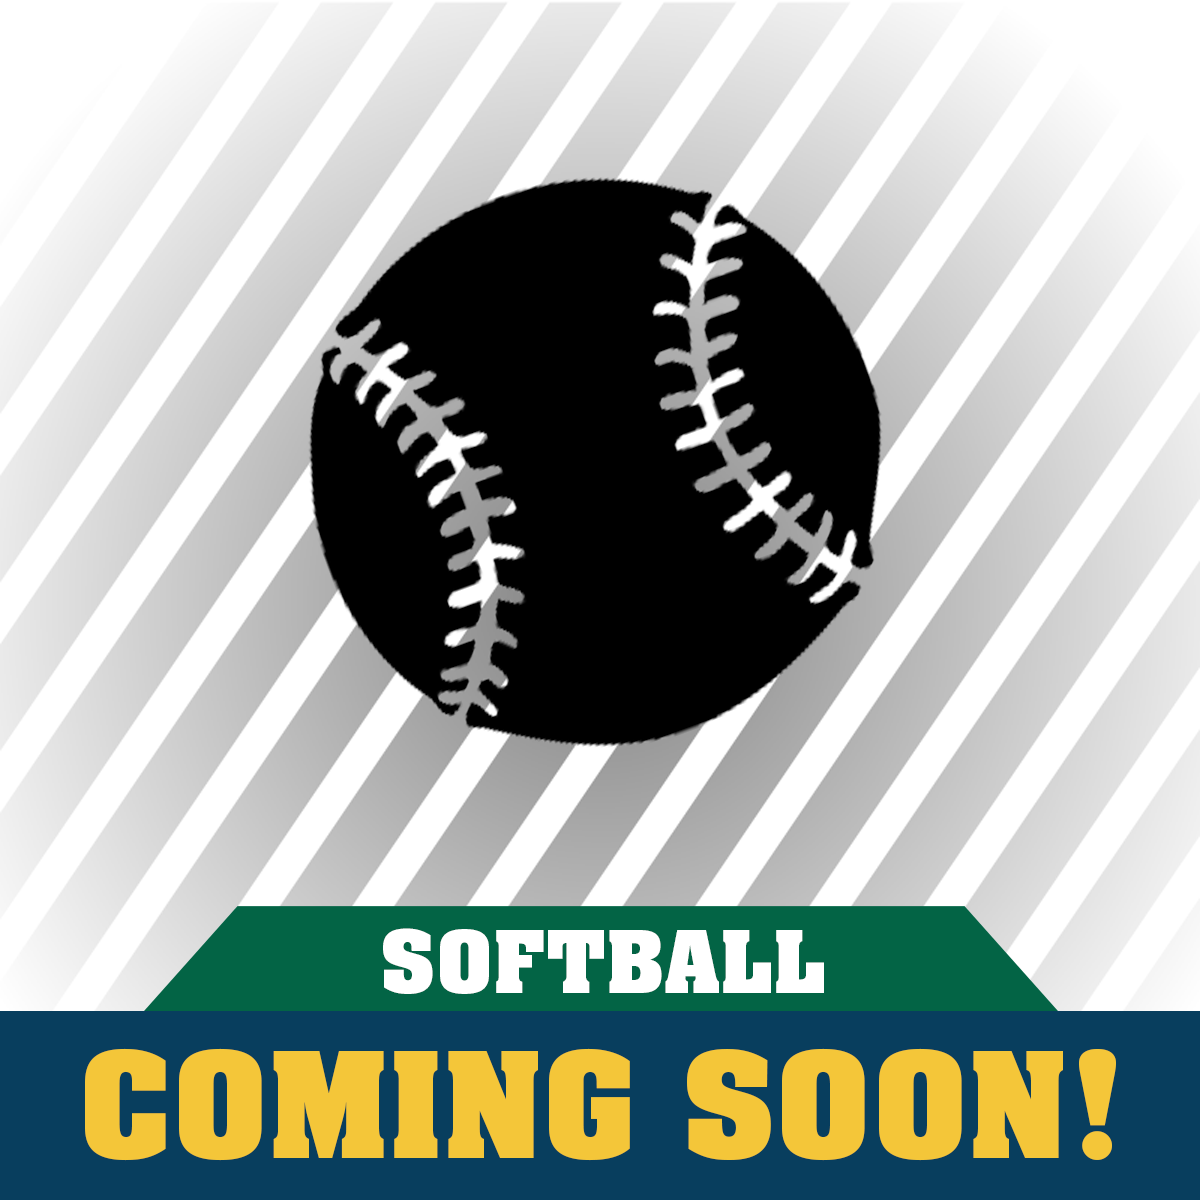 Clover Garden Softball Apparel Coming Soon!